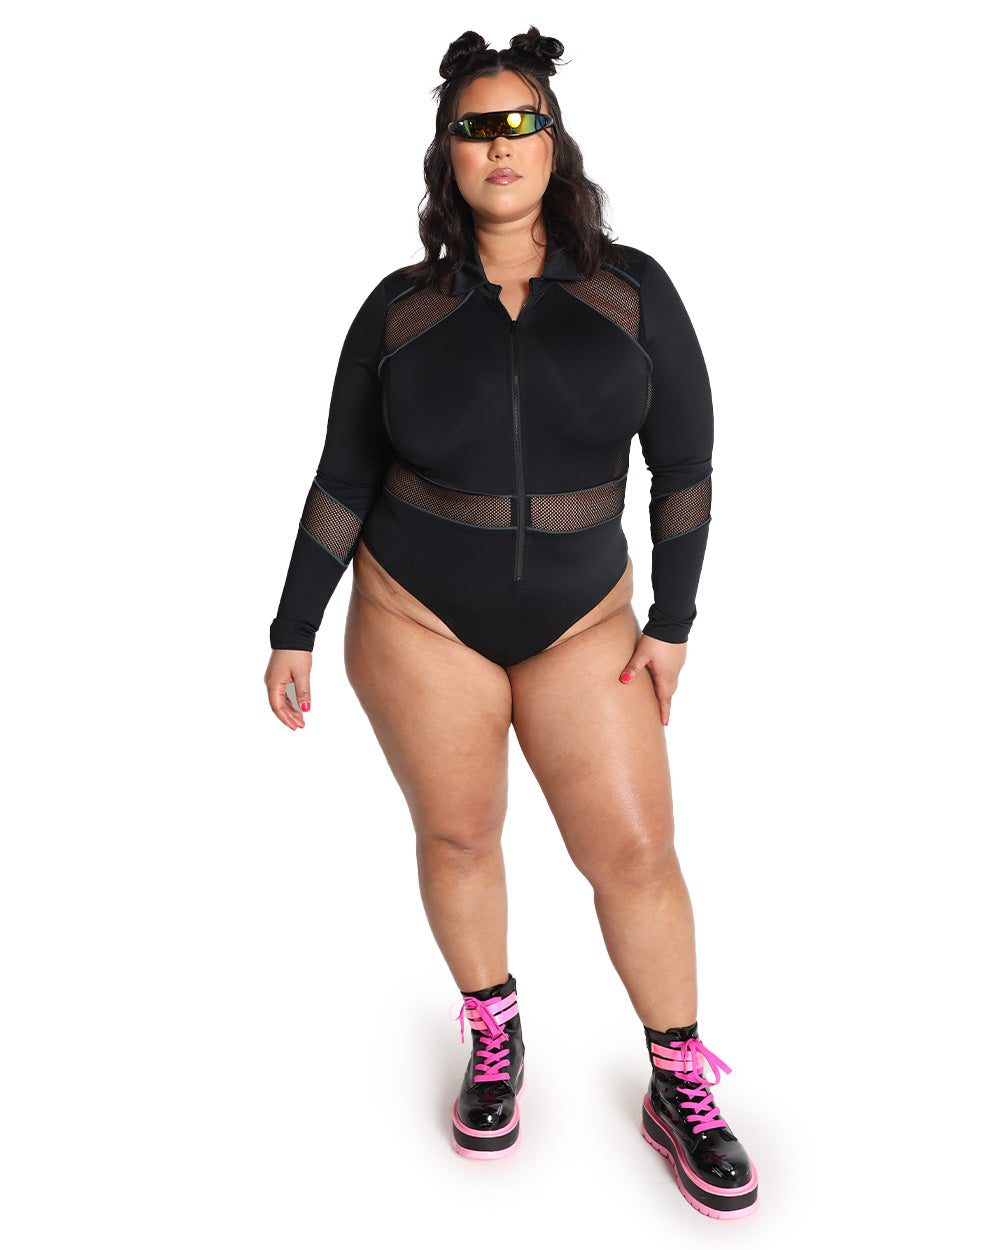 Society's Reflection Mirrored Bodysuit – HARMONIA NY